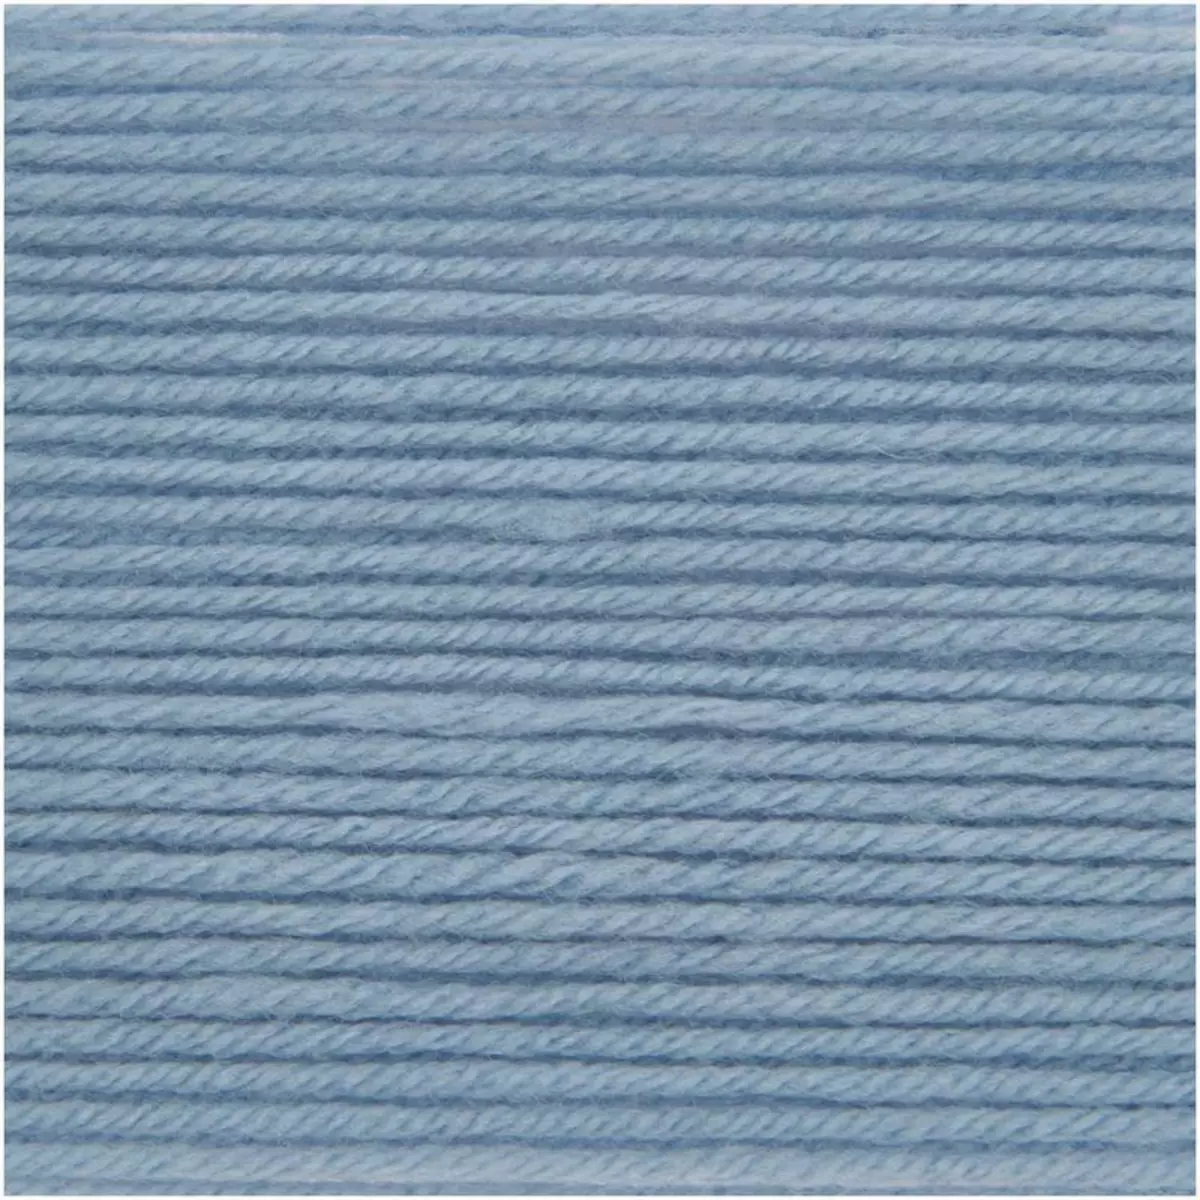 RICO DESIGN Pelote laine mérinos 100 m - Bleu